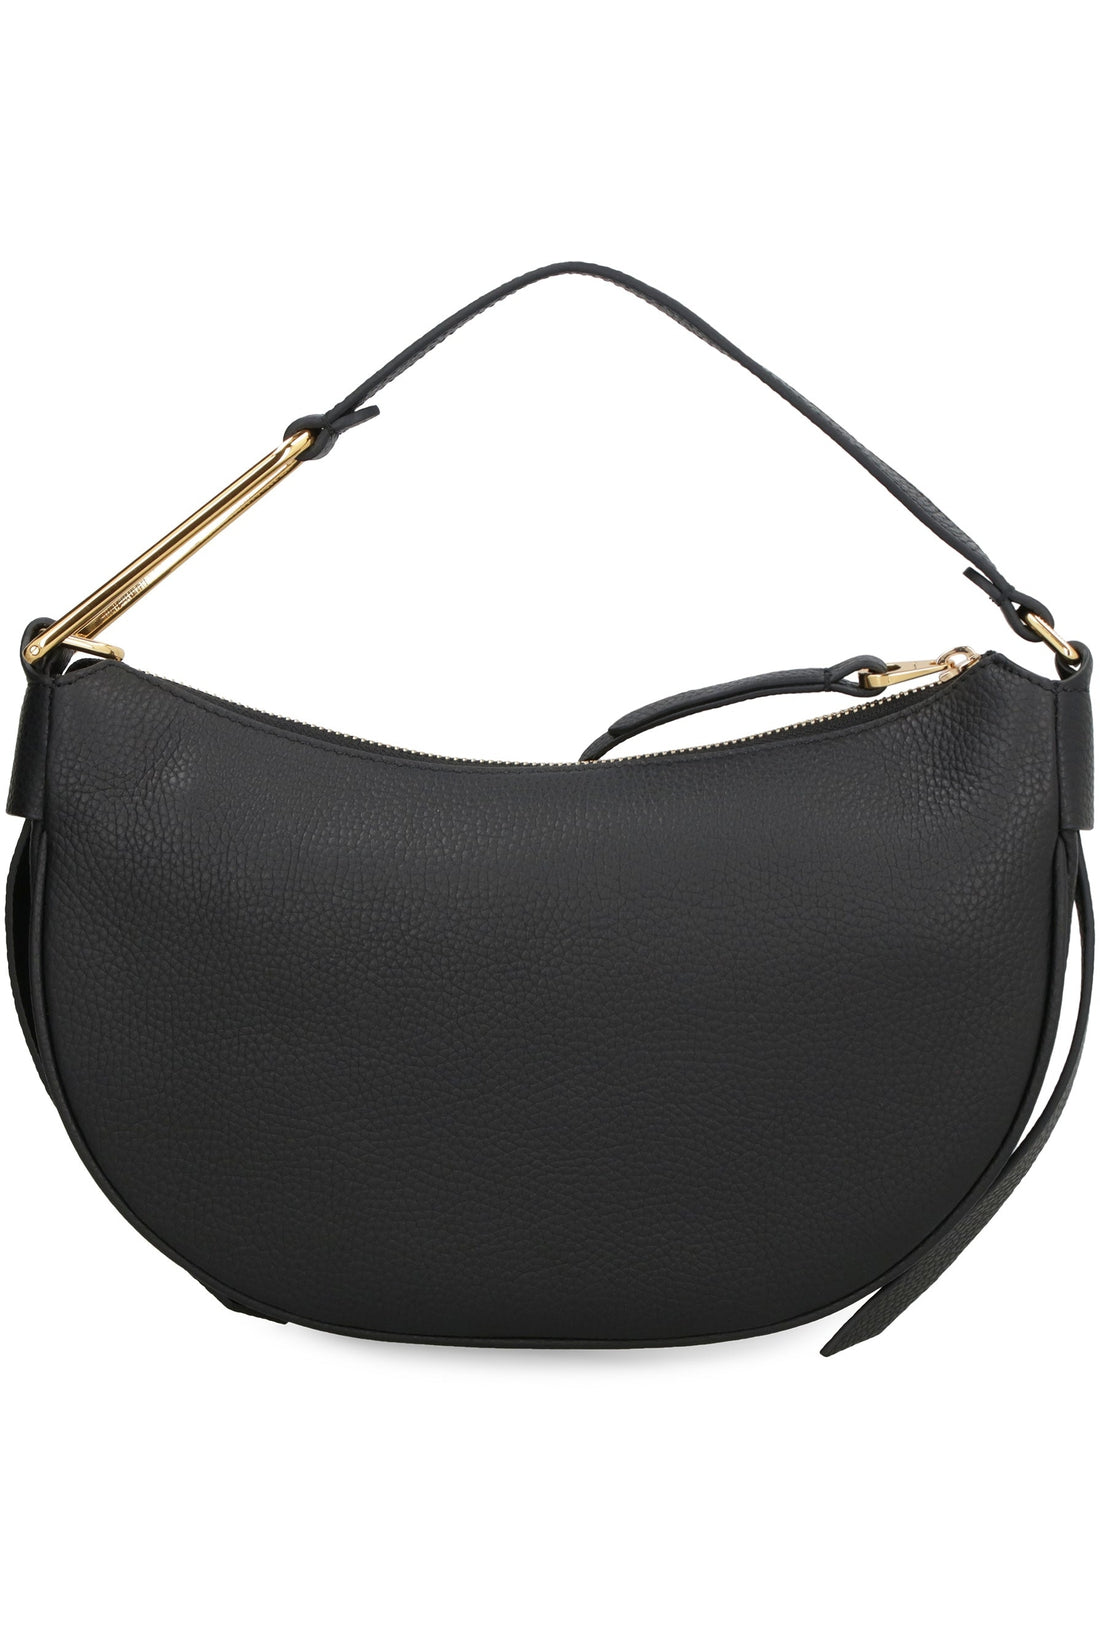 Coccinelle-OUTLET-SALE-Priscilla leather shoulder bag-ARCHIVIST